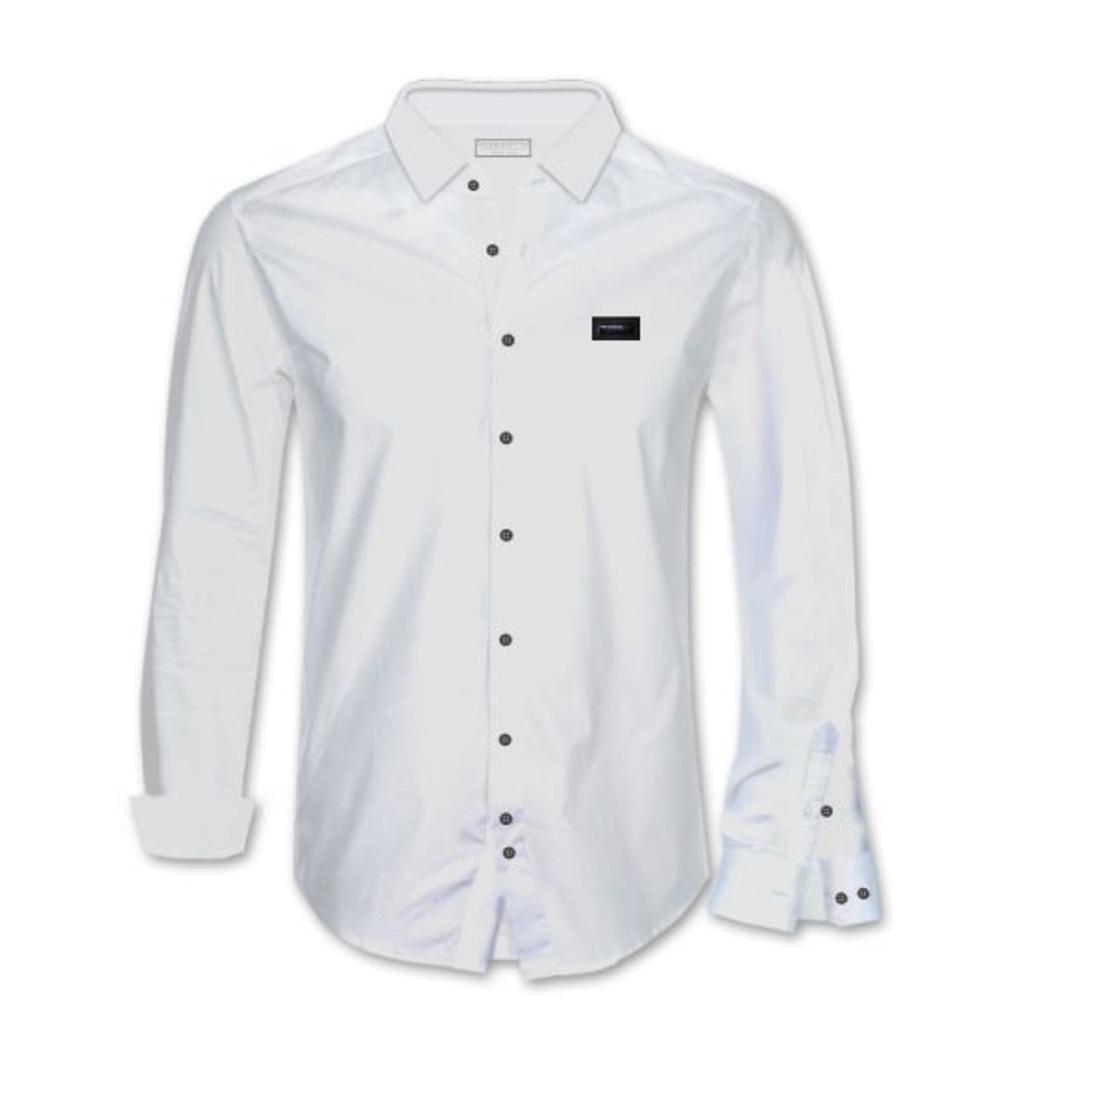 חולצת כפתורים Stretch עם פלטה - לבן